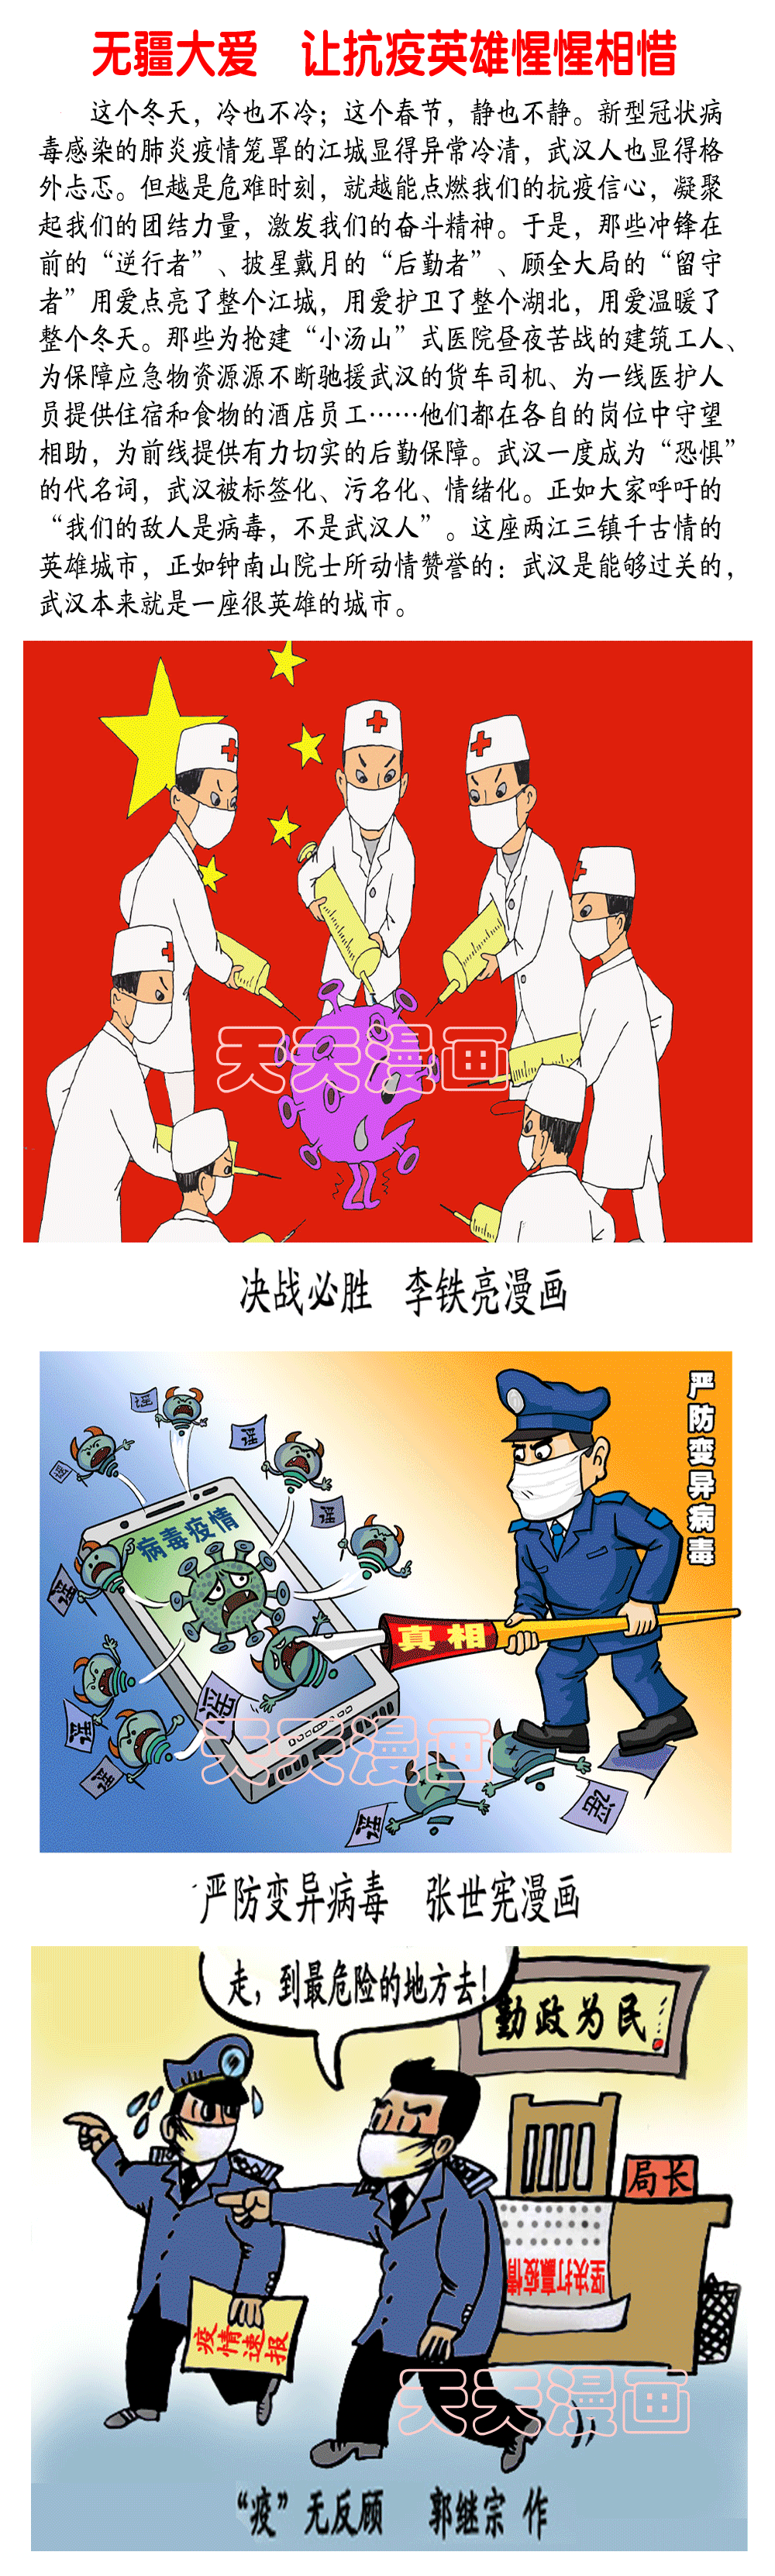 天天漫画网《防控阻击战 全民战疫情》(漫画专刊)